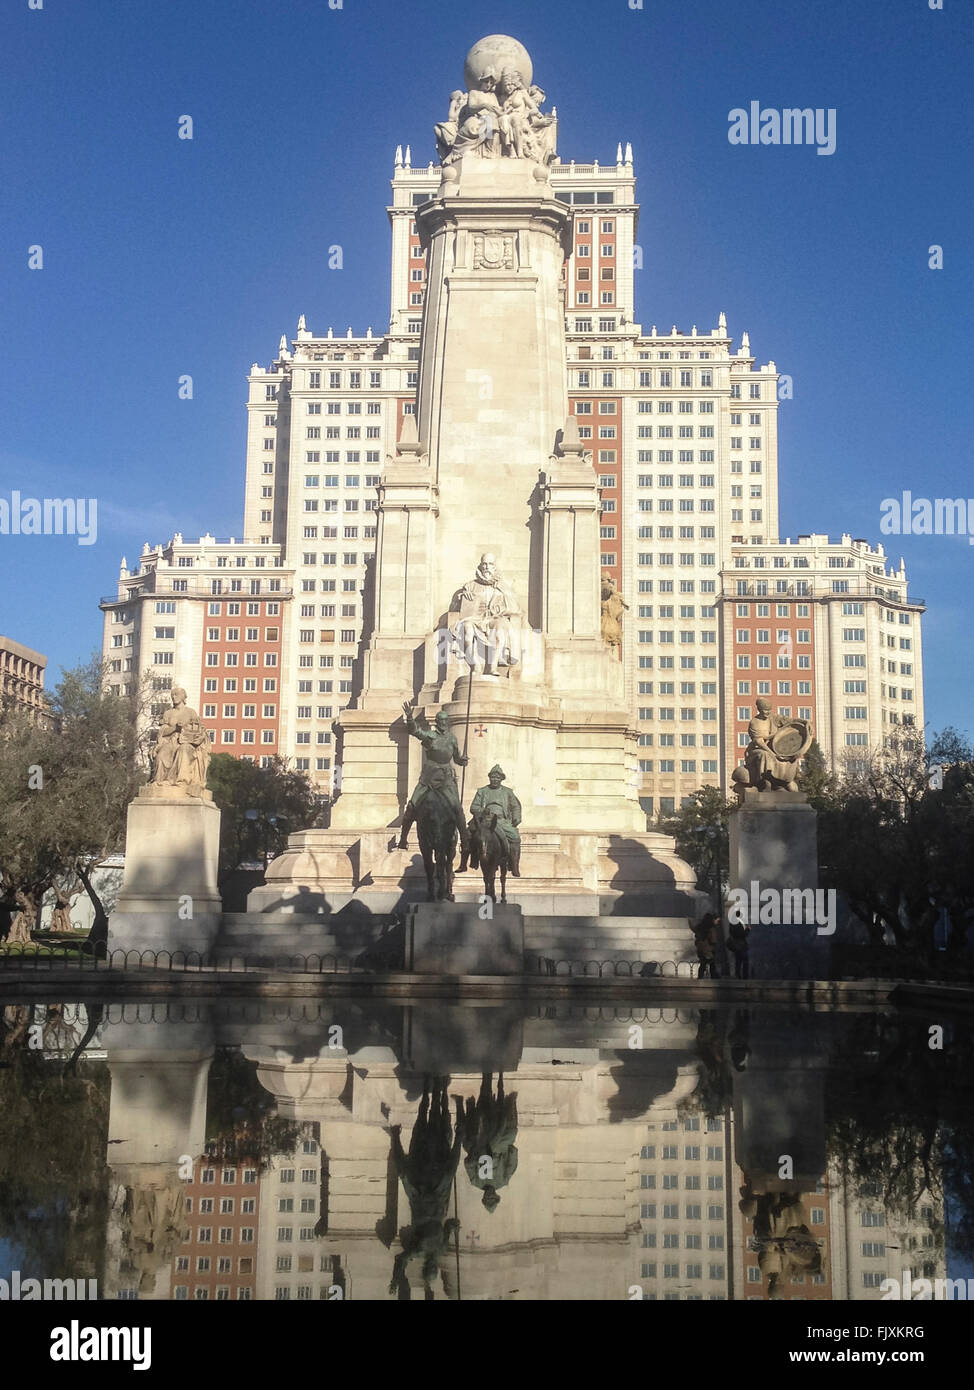 Esculturas en bronce de Don Quijote y Sancho Panza en la Plaza de España, Madrid Foto de stock